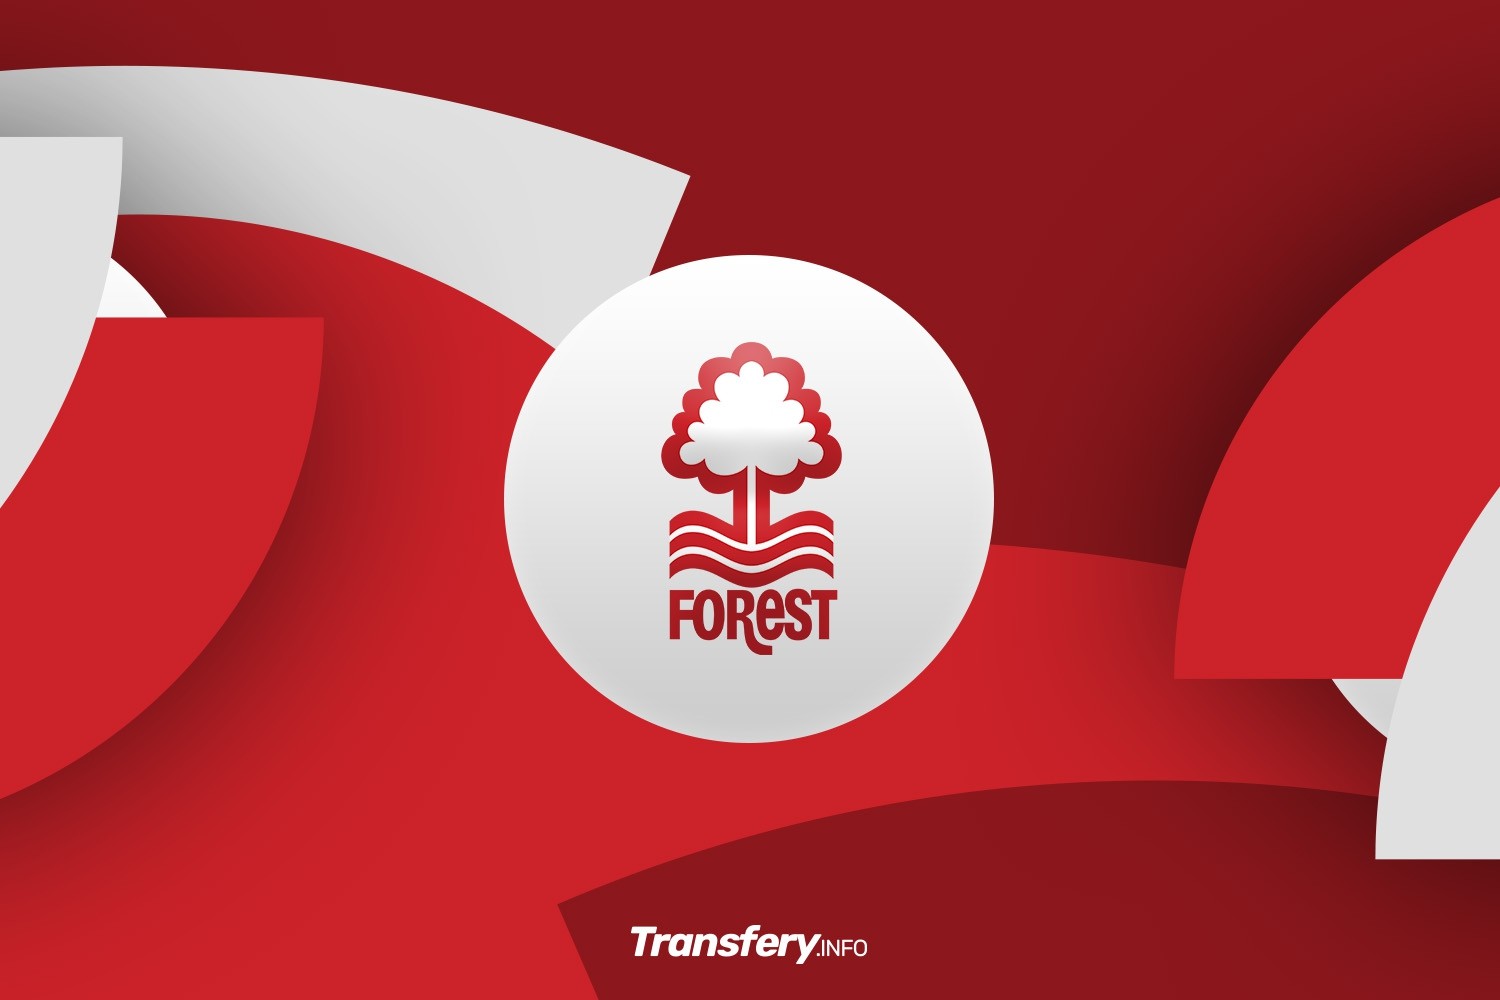 OFICJALNIE: CZTERNASTY transfer Nottingham Forest. Doświadczony pomocnik na poziomie Premier League